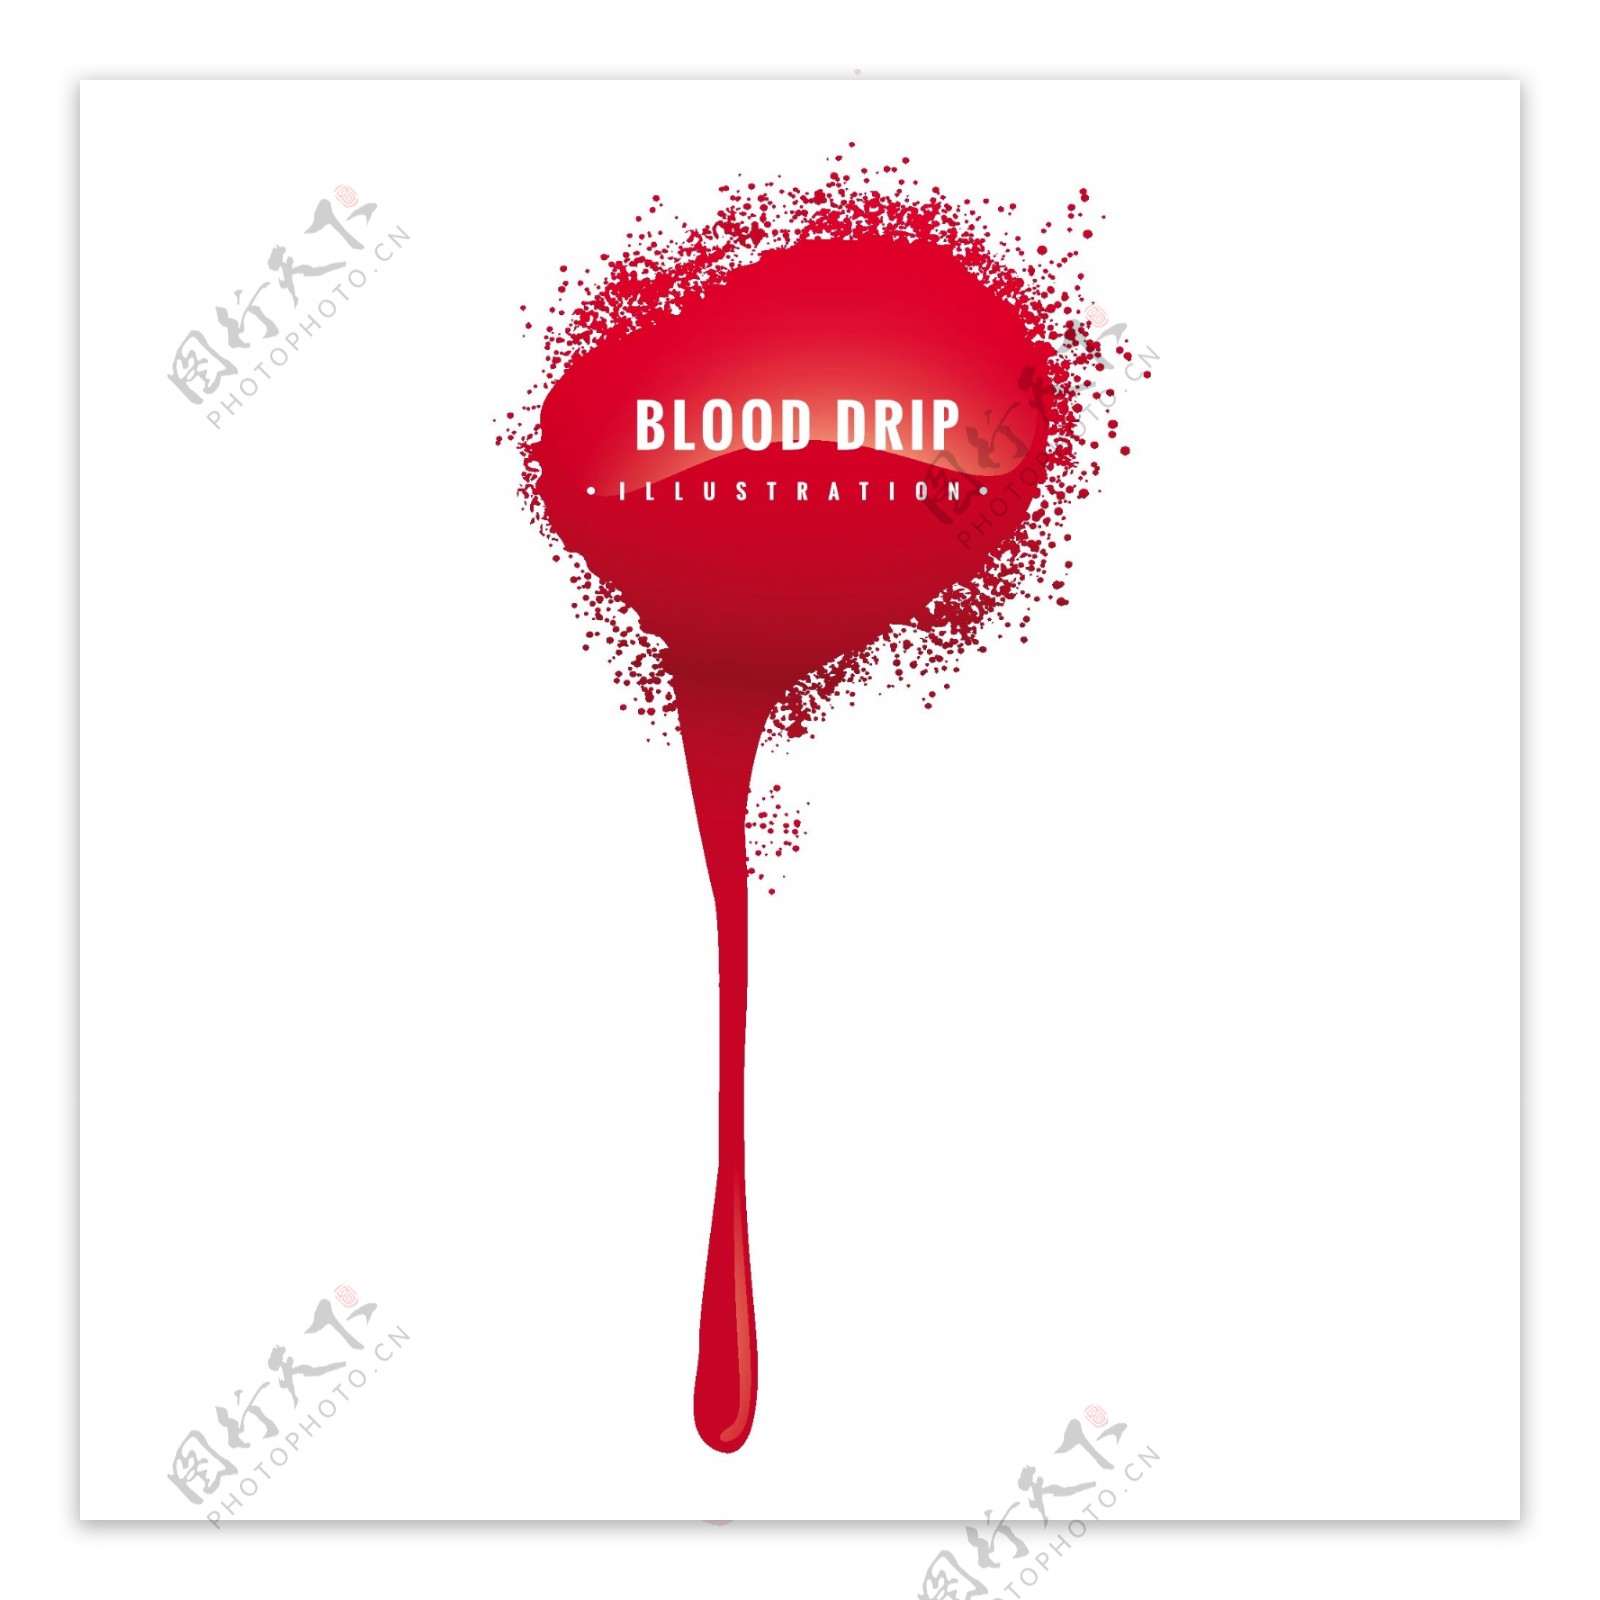 血滴插图